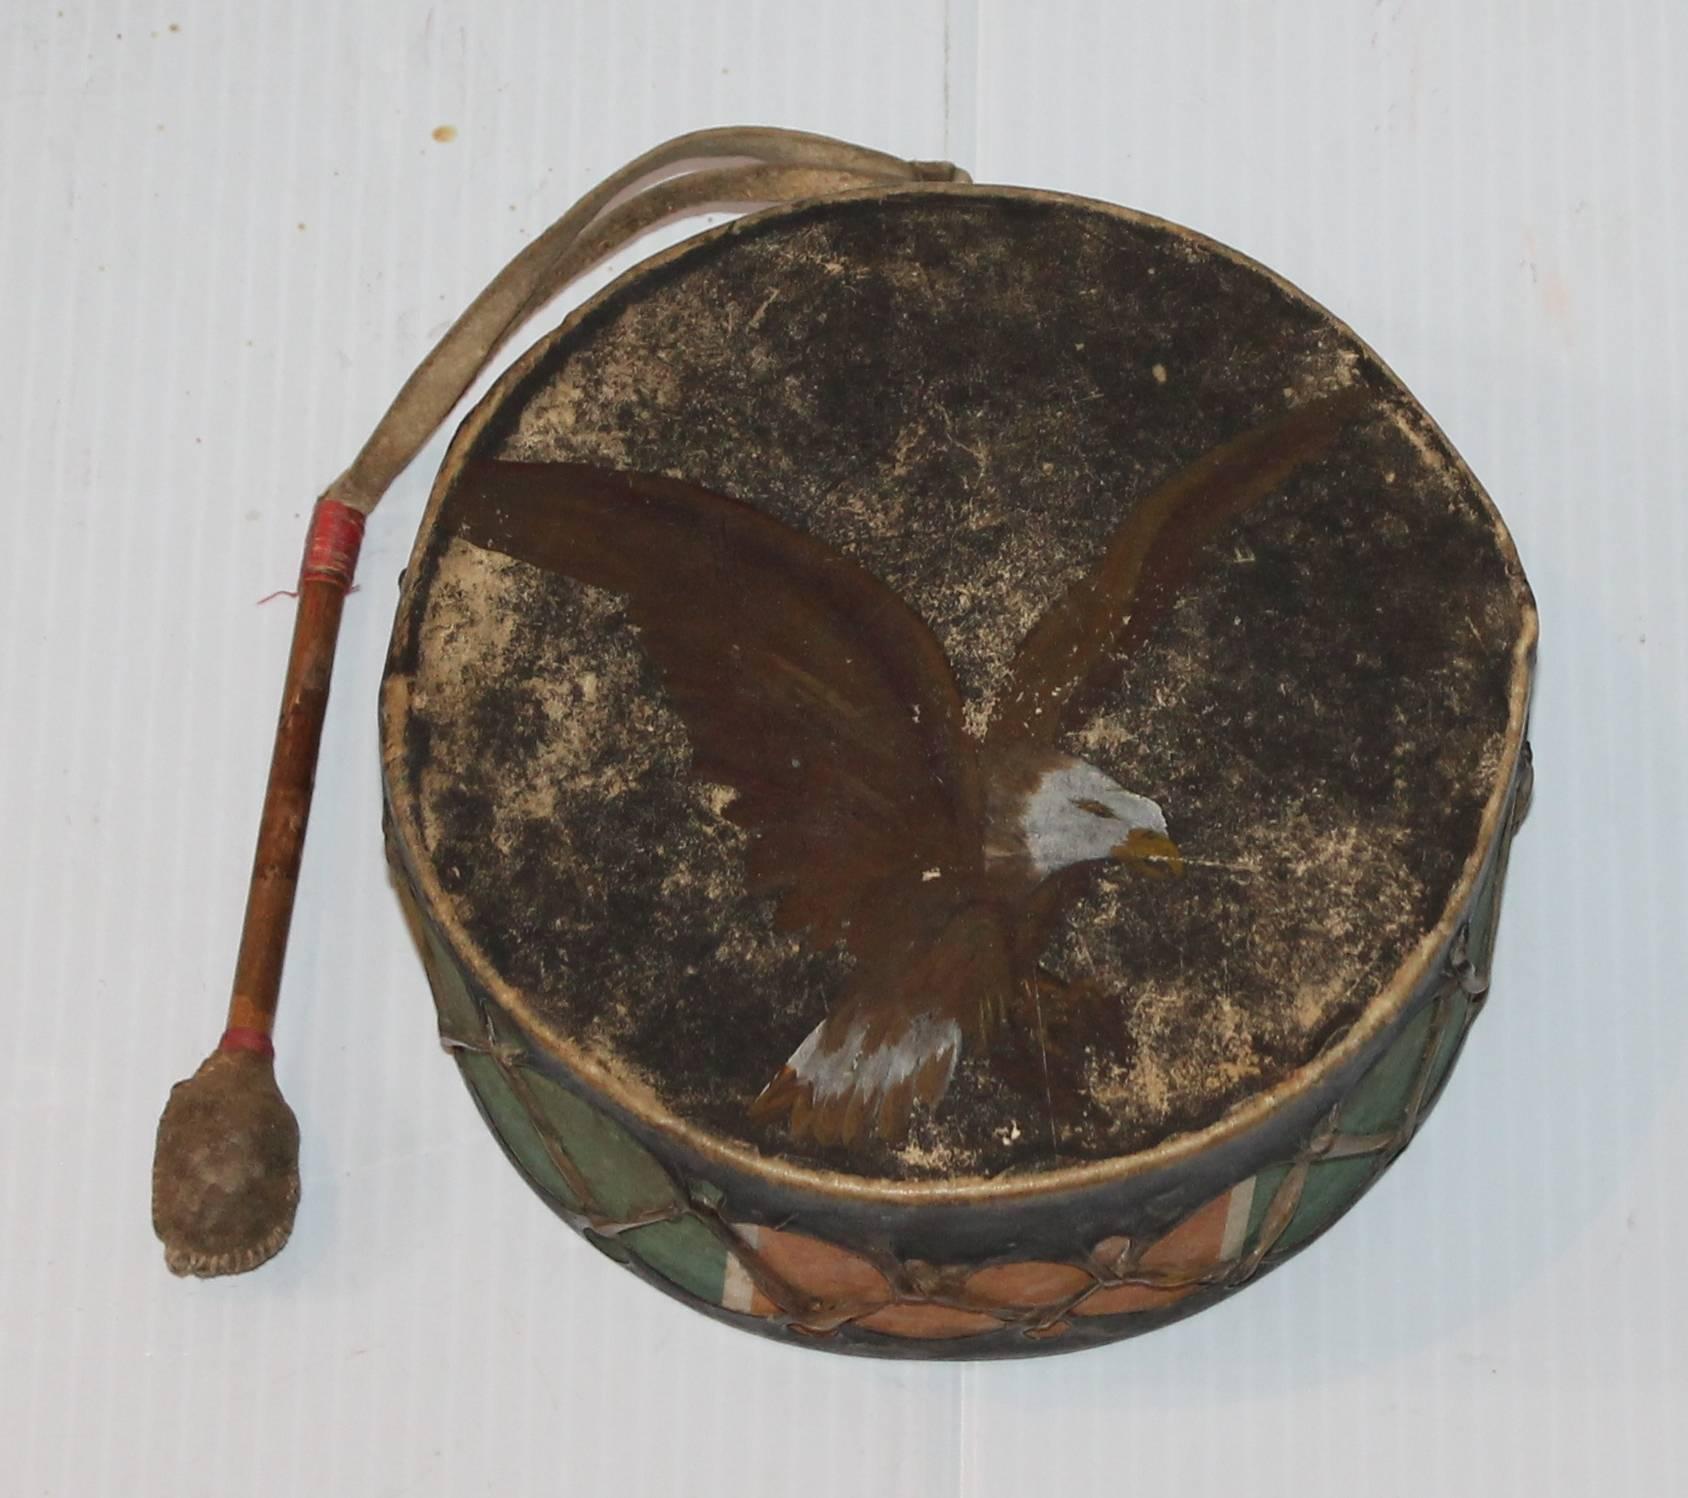 Cette fantastique rareté est dans sa surface peinte d'origine avec la baguette de tambour originale faite à la main. Le haut du tambour est orné d'un aigle peint et la base est recouverte d'une couche de peinture noire originale usée.